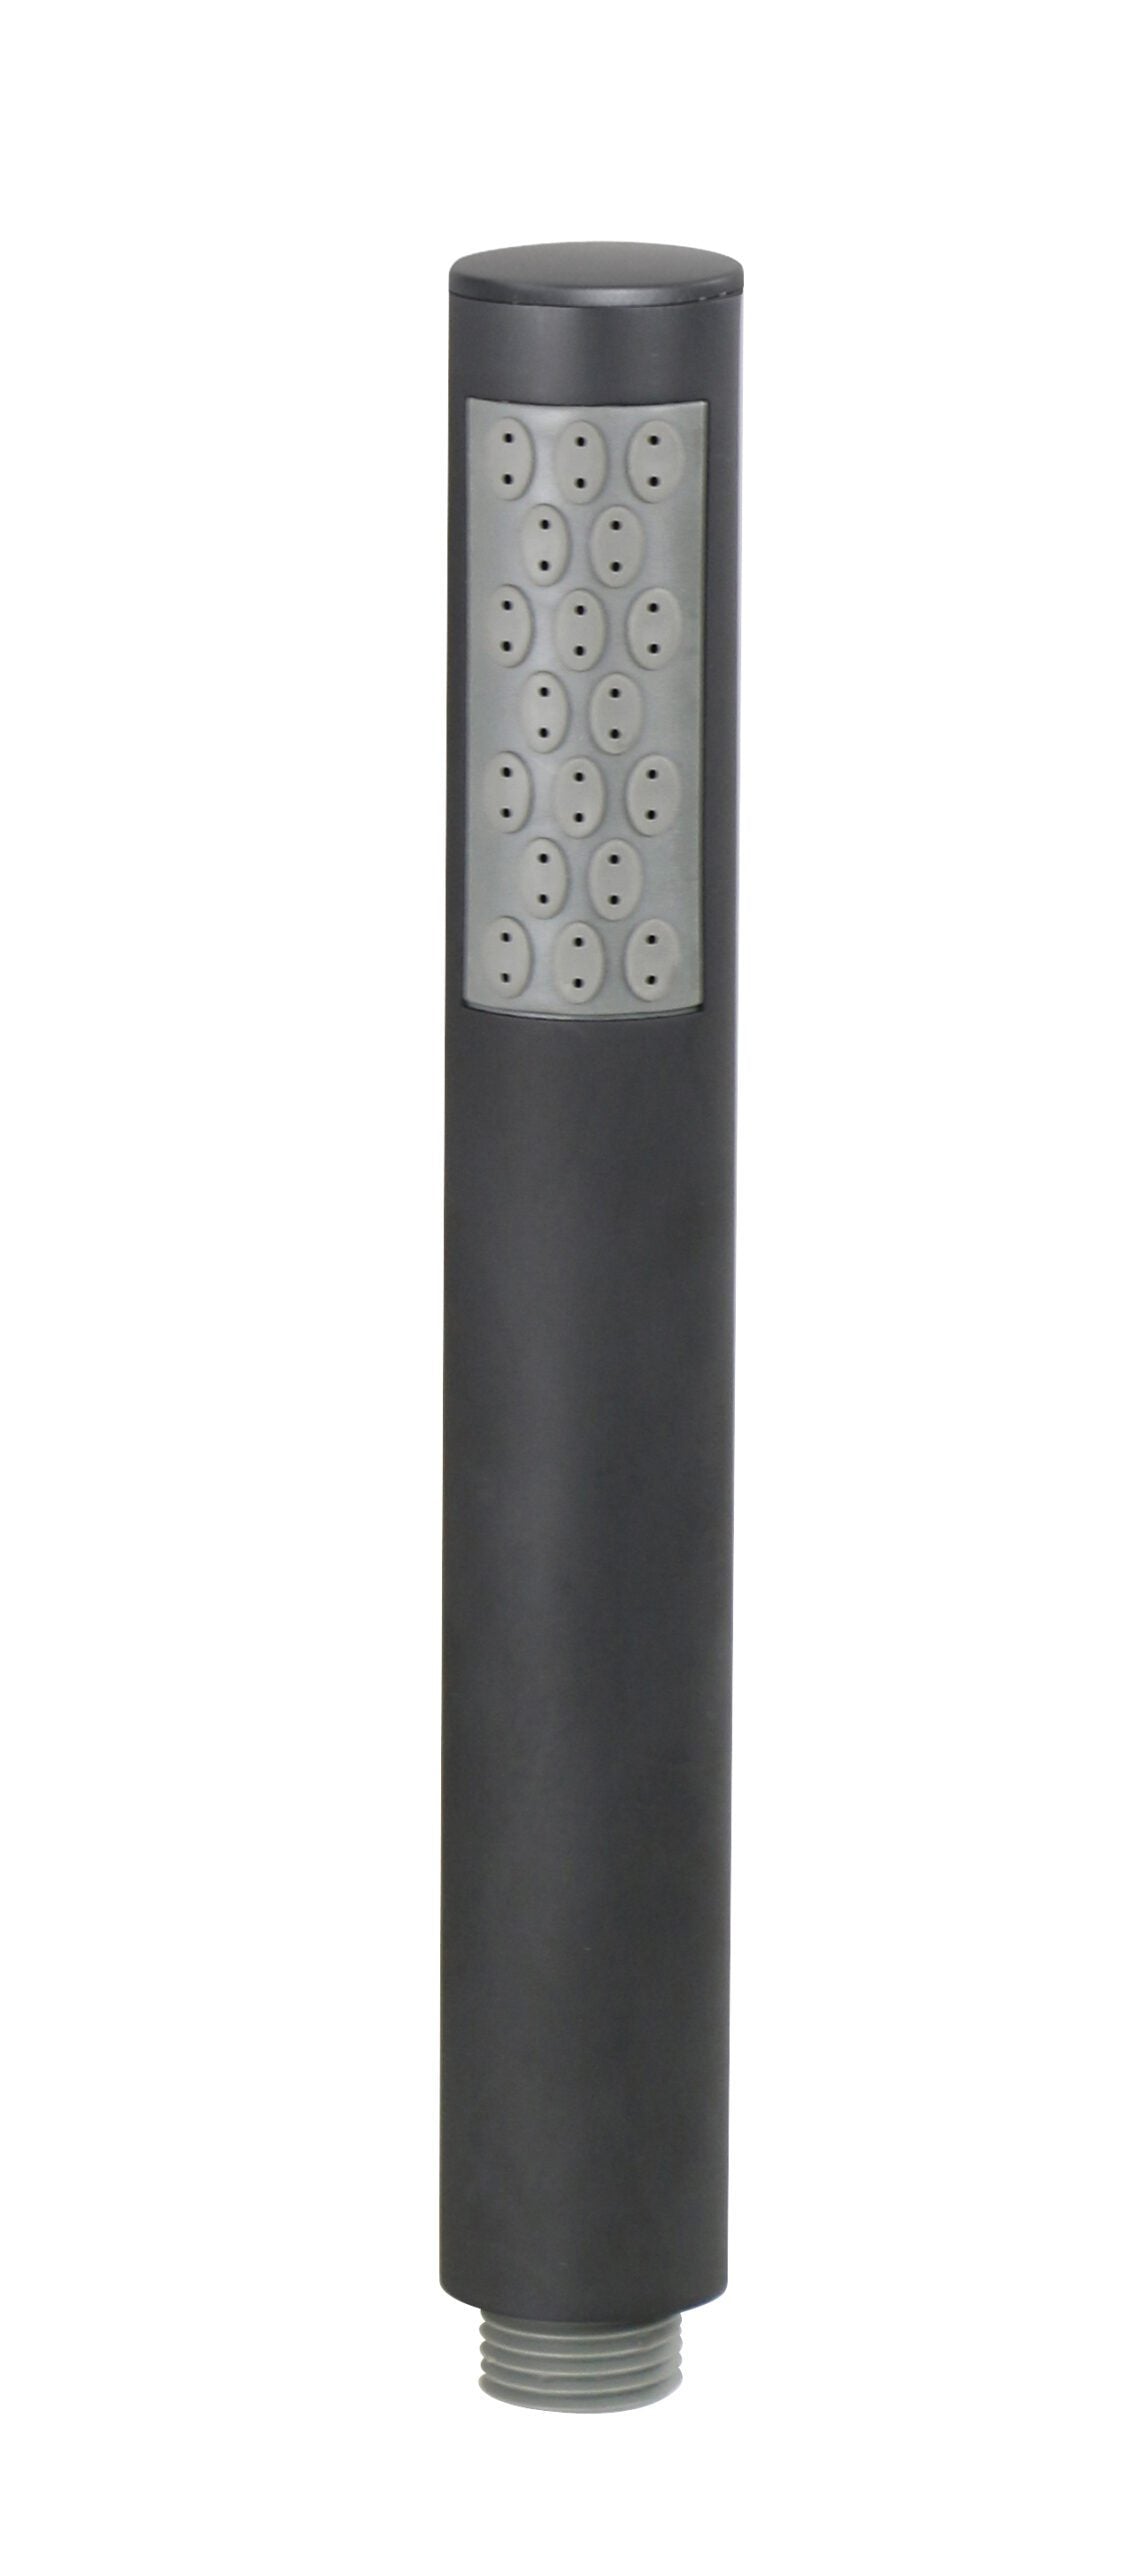 Doccia tonda in ABS NERO OPACO, a getto fisso, diametro 28mm